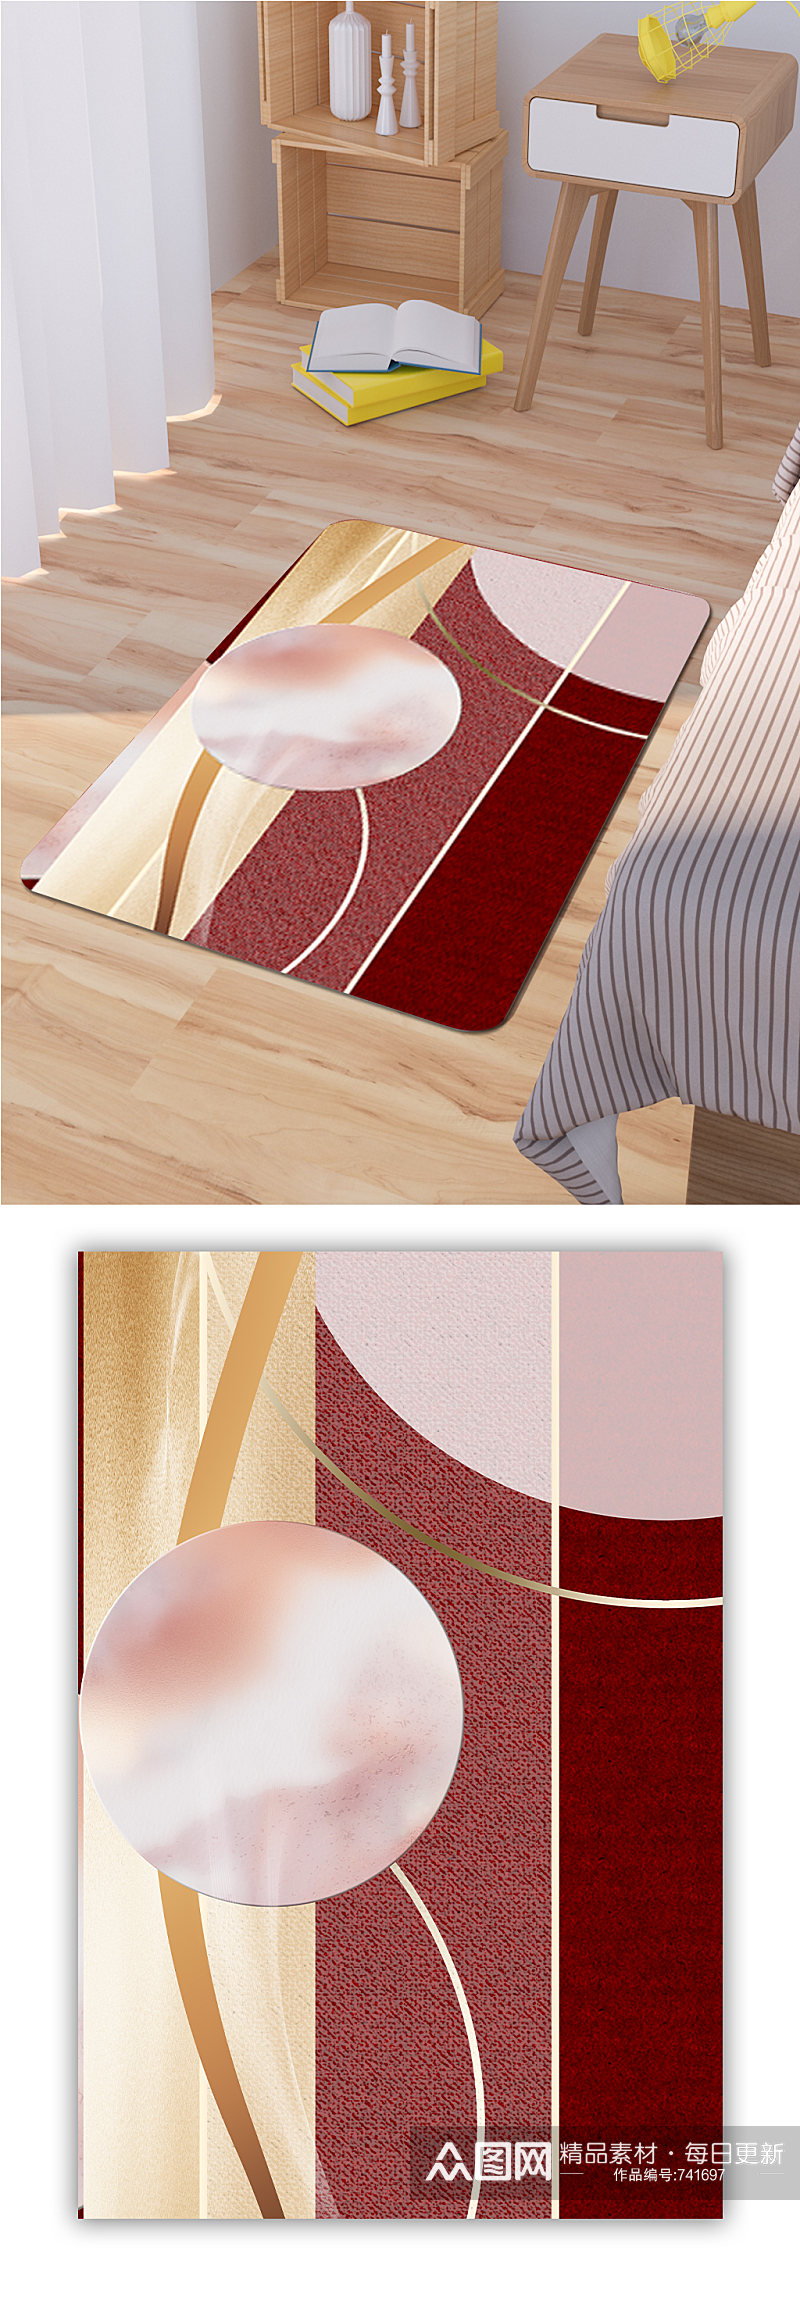 卡通圆形地毯抽象色块素材